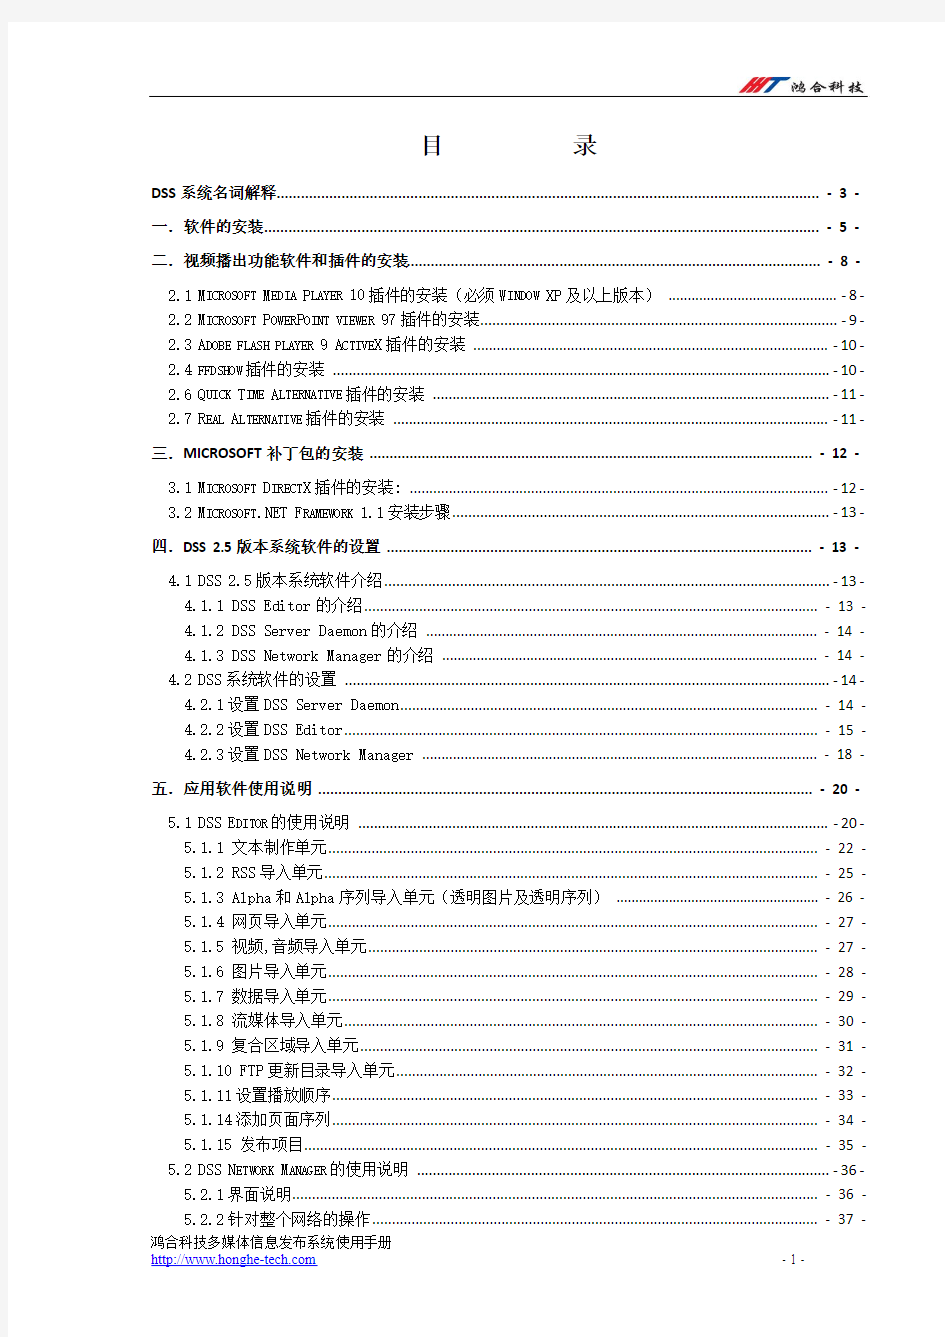 DSS系统使用手册(中文版)最详细